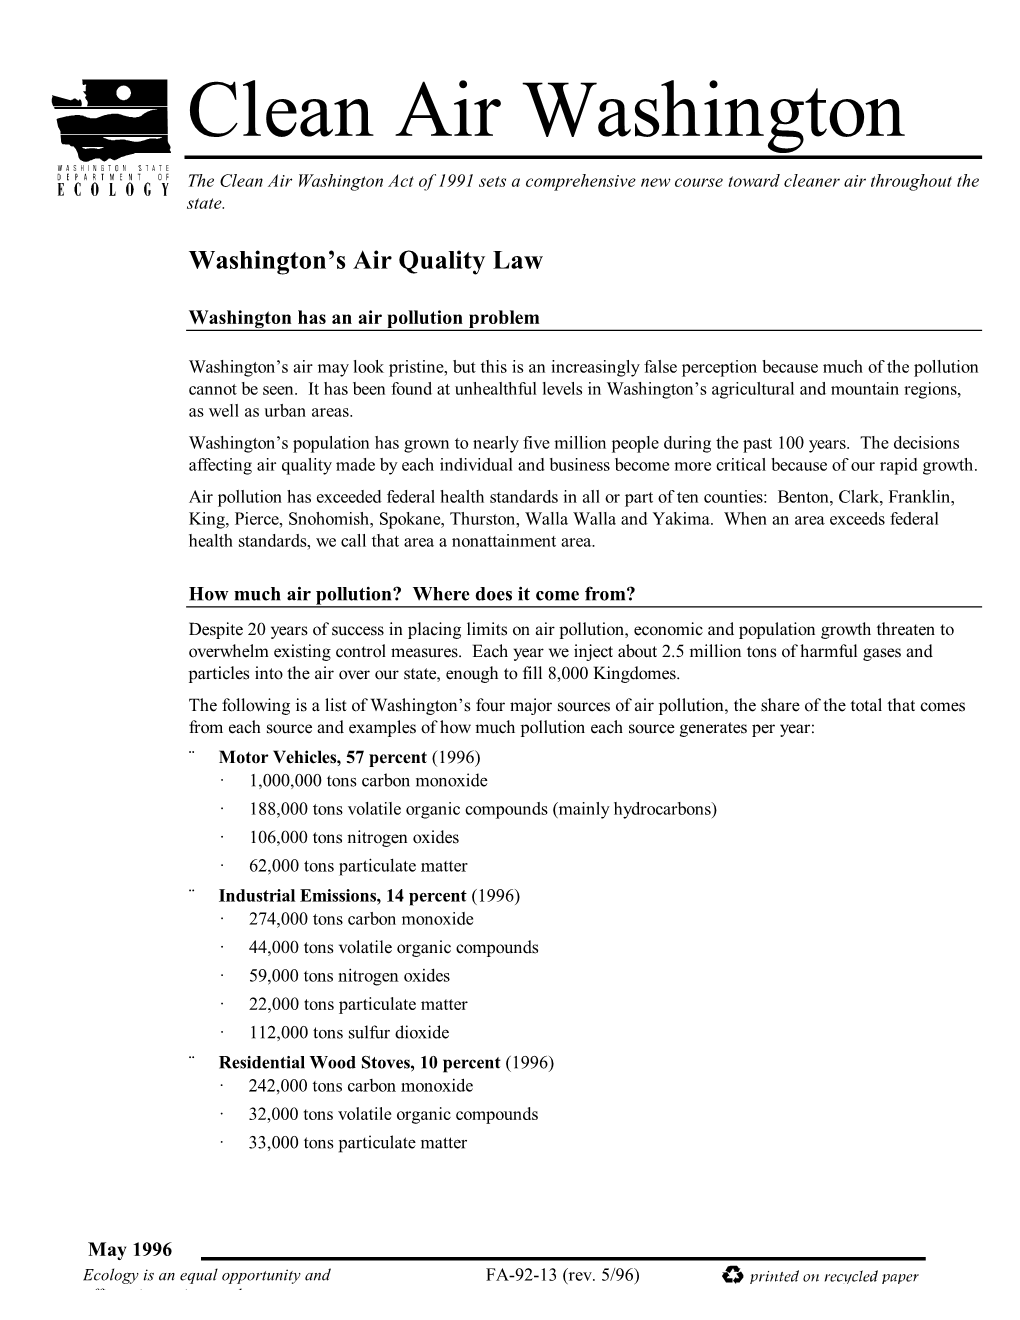 Washington's Air Quality Laws